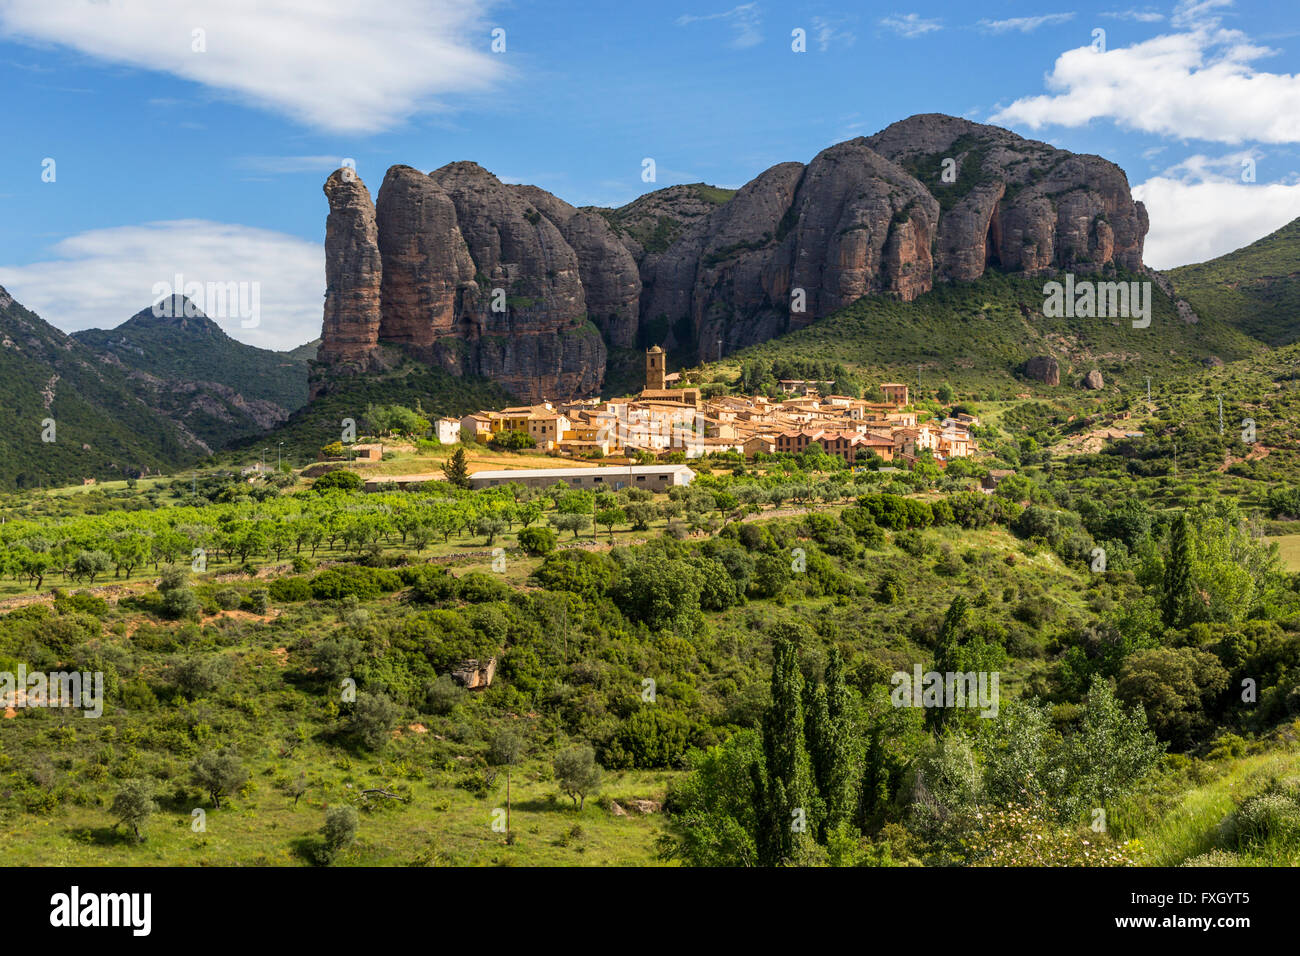 Villaggio di Agüero sotto il conglomerato formazioni rocciose del Mallos de Riglos, provincia di Huesca, Aragona, Spagna. Foto Stock